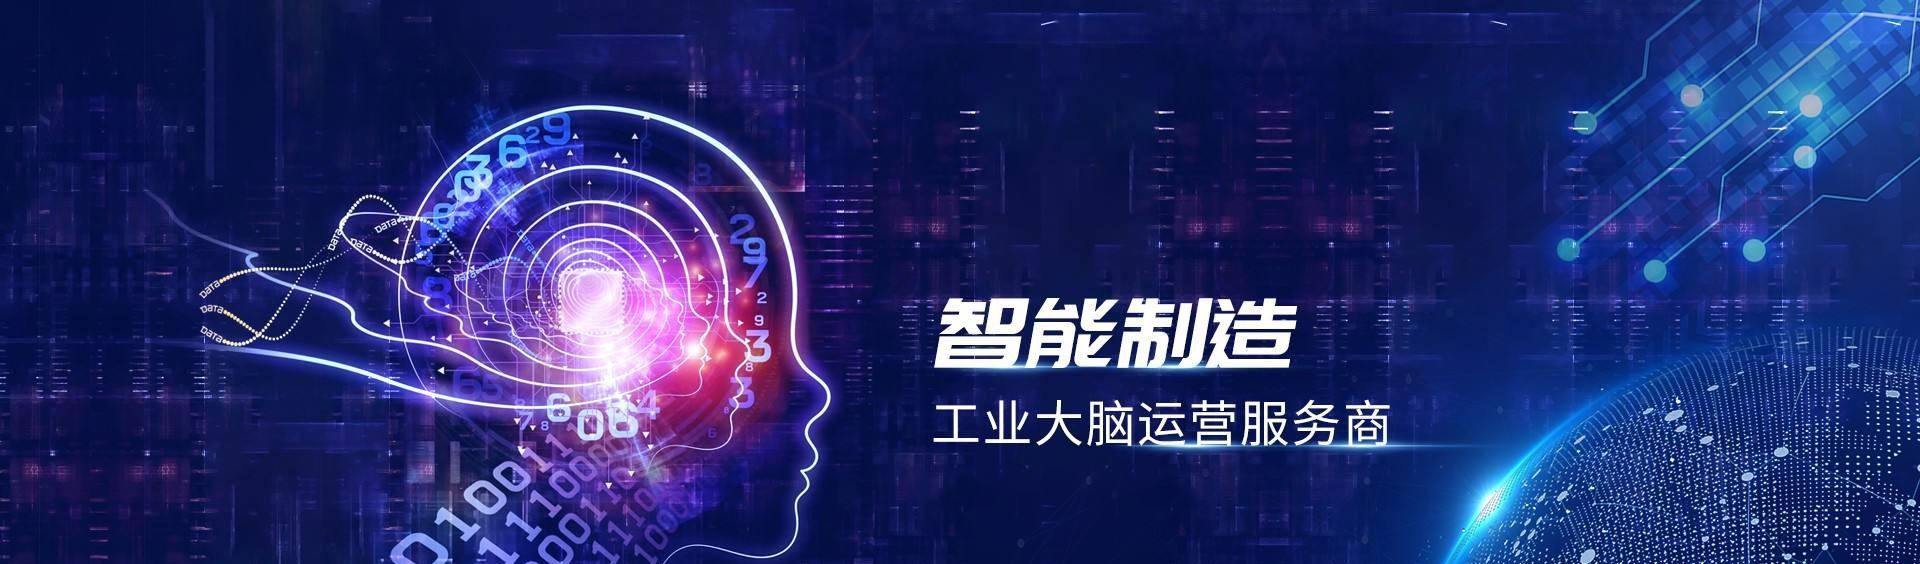 银川工业互联网平台(工业大脑)运营服务项目